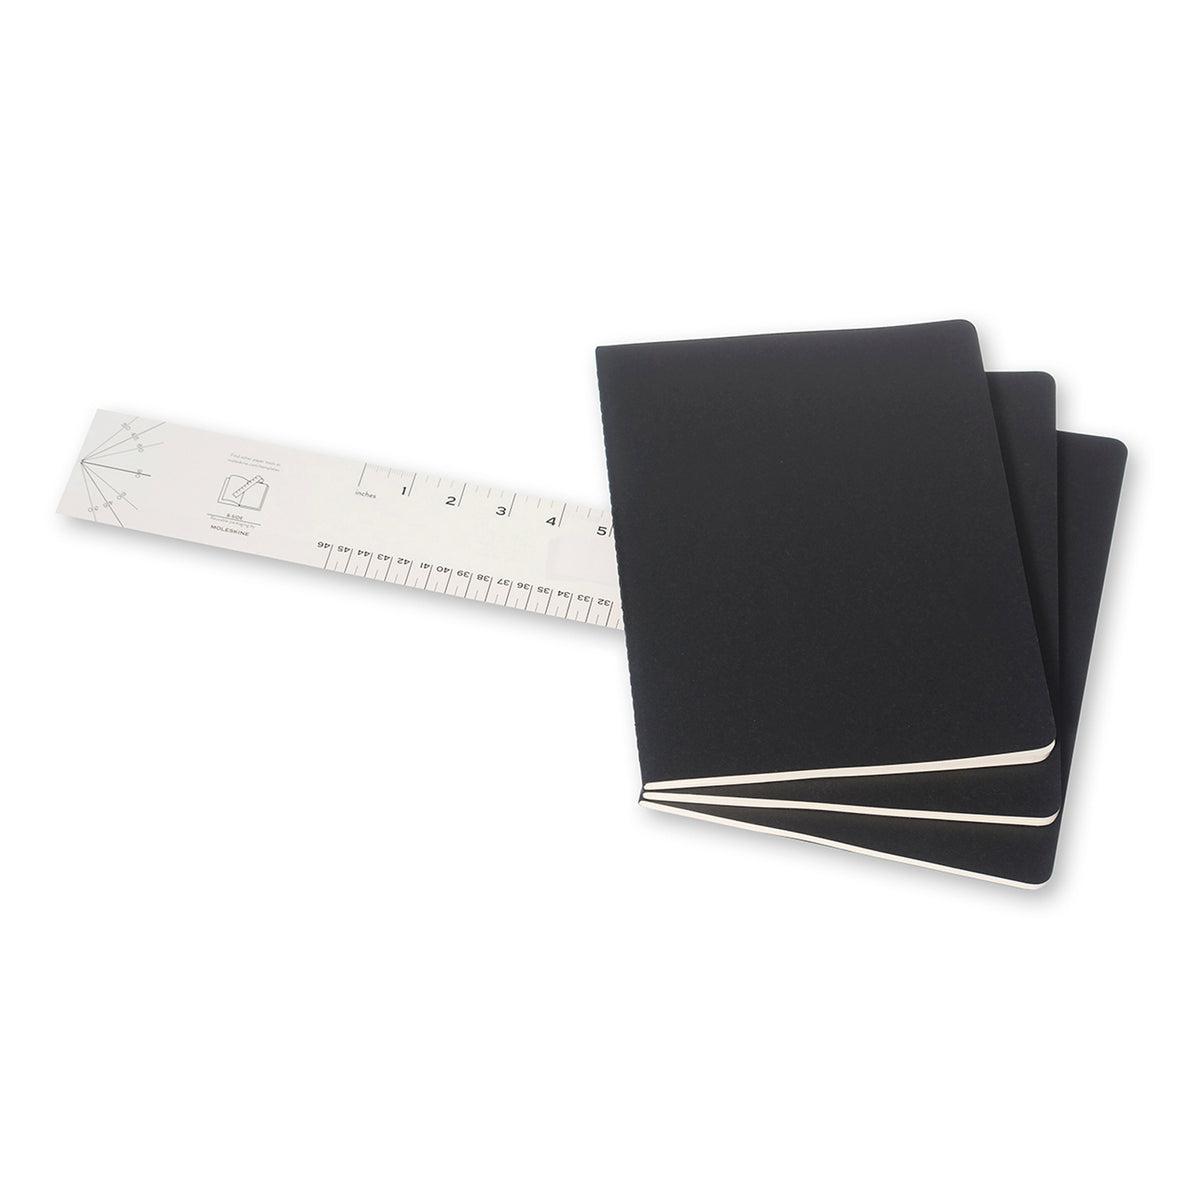 Moleskine - Cahier Notebook - Set of 3 - Ruled - Extra Large - Black